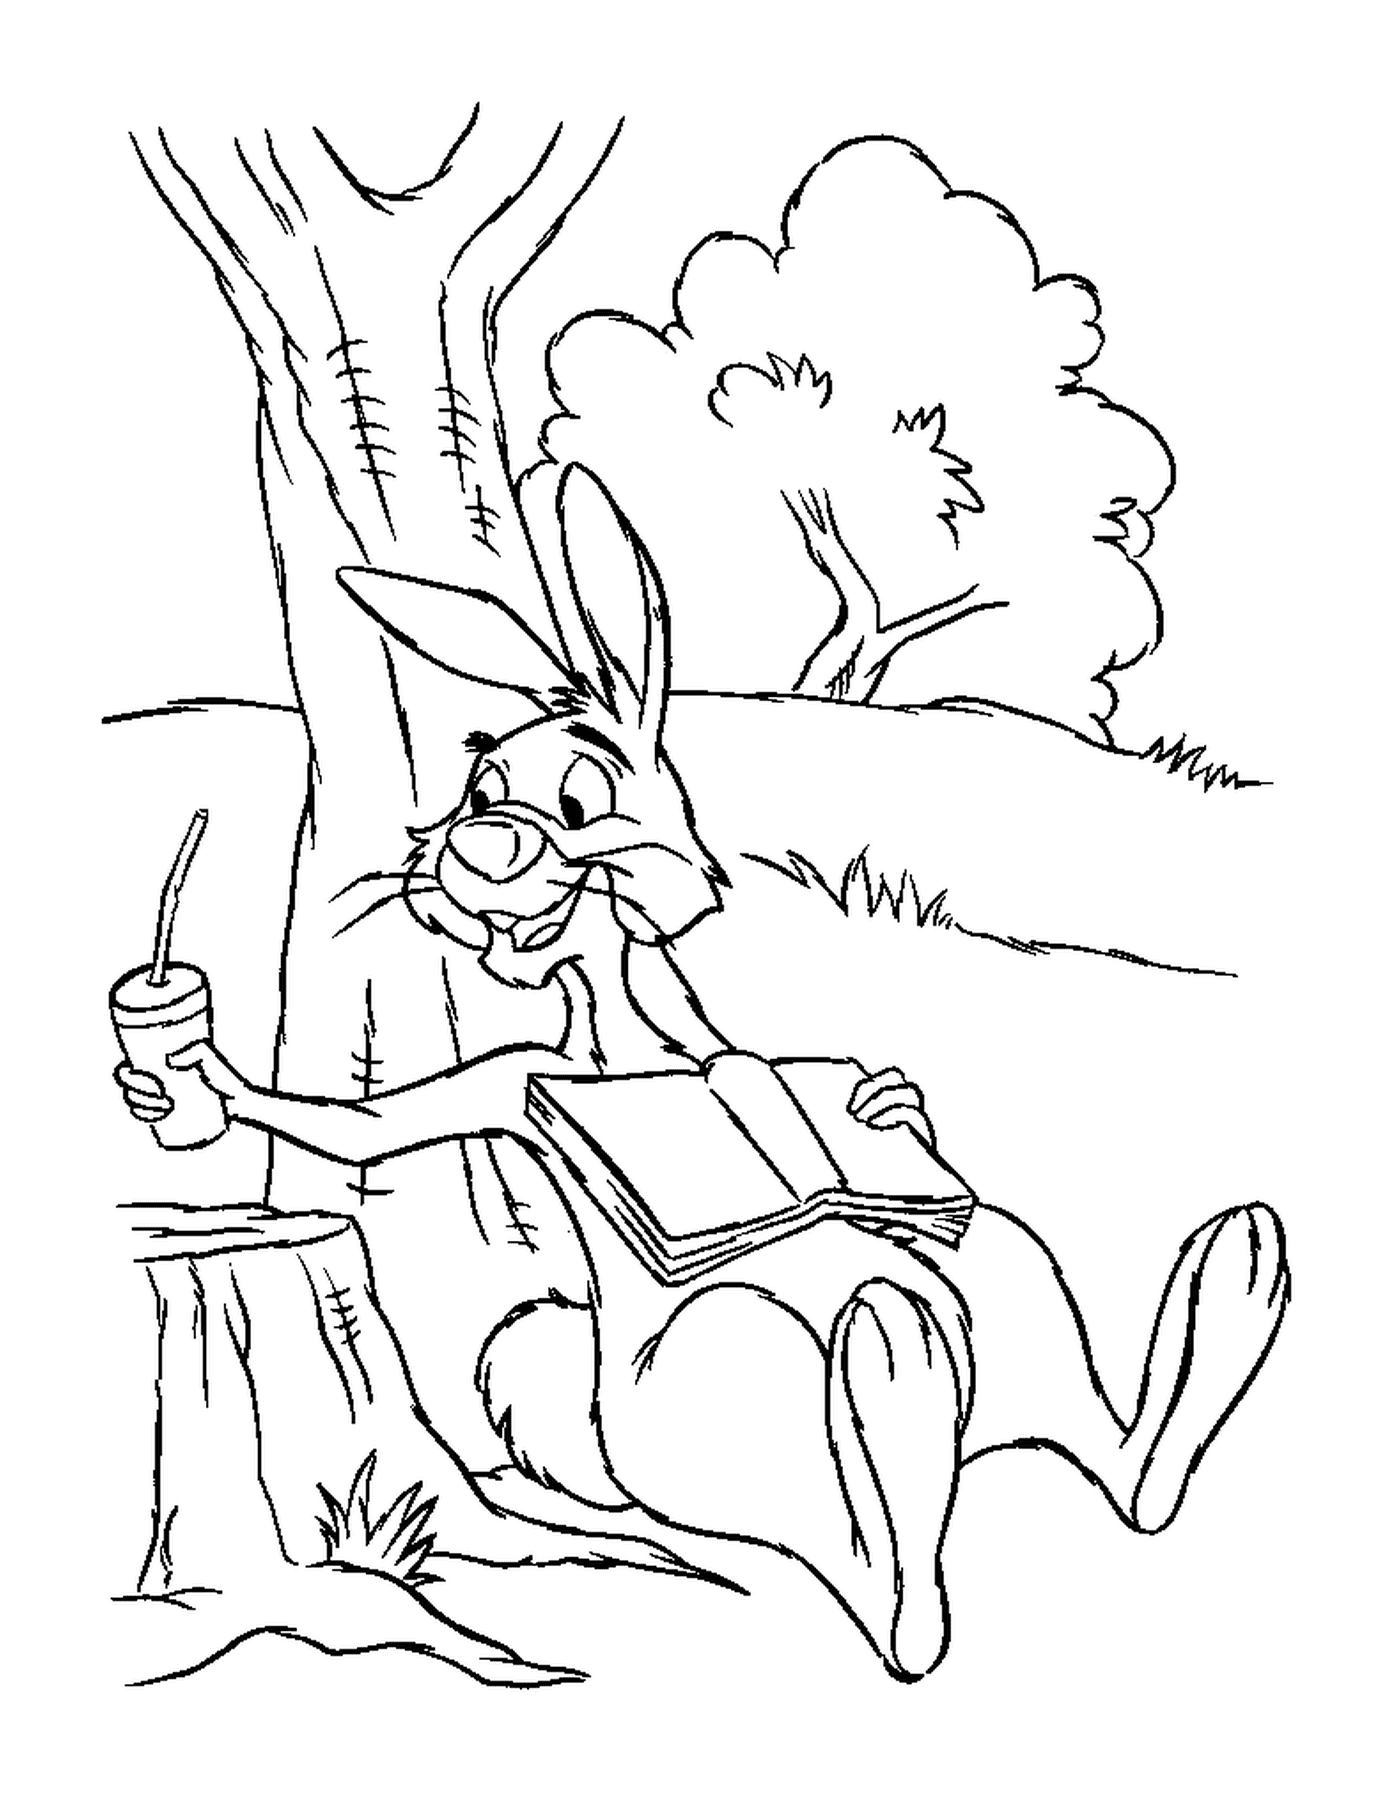  Un coniglio seduto su un ceppo vicino ad un albero con succo di carota 